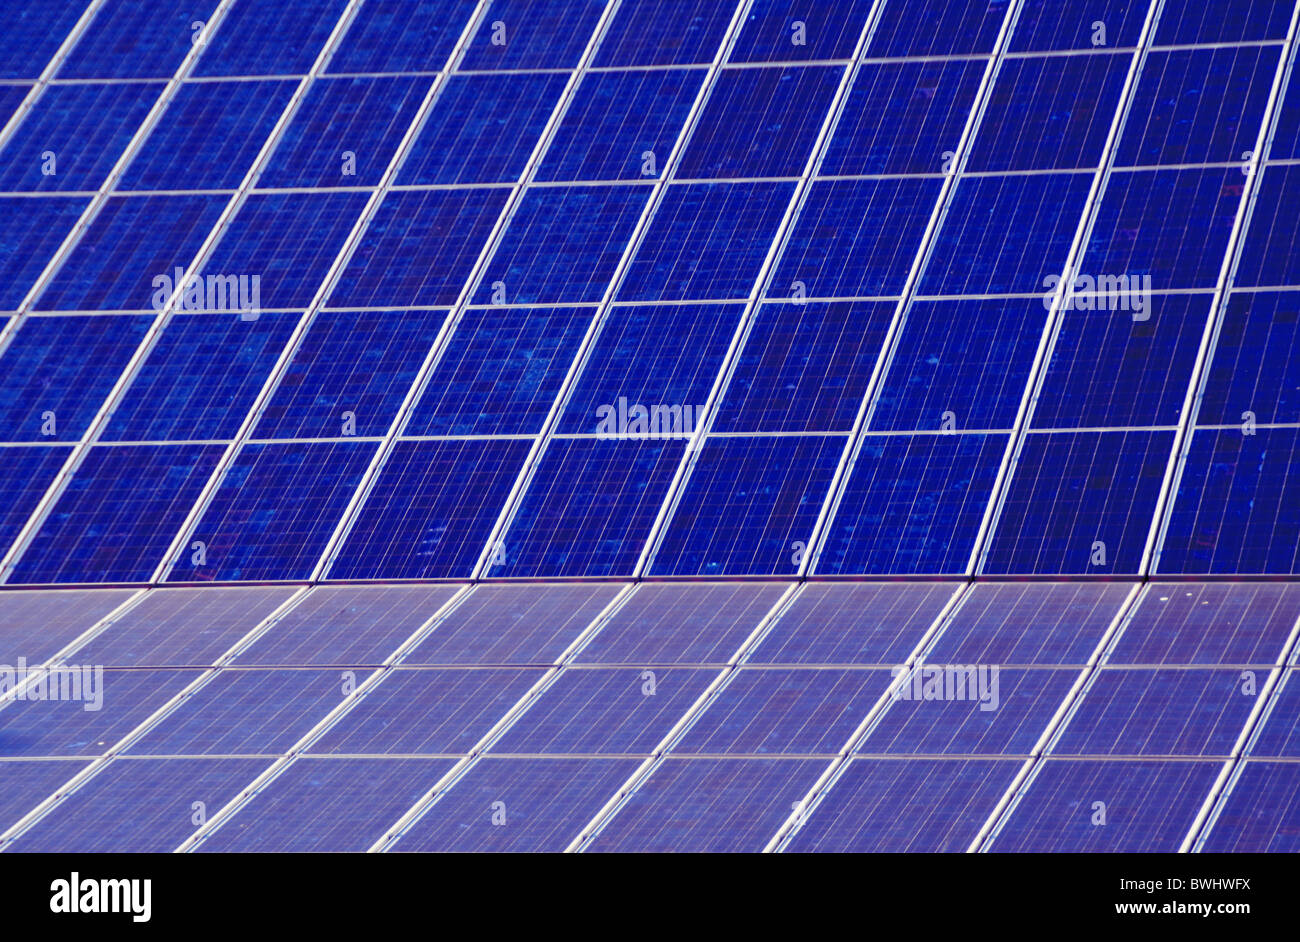 solar energy solar cells solar surface solar technology solar strength solar-pursued energy power production e Stock Photo